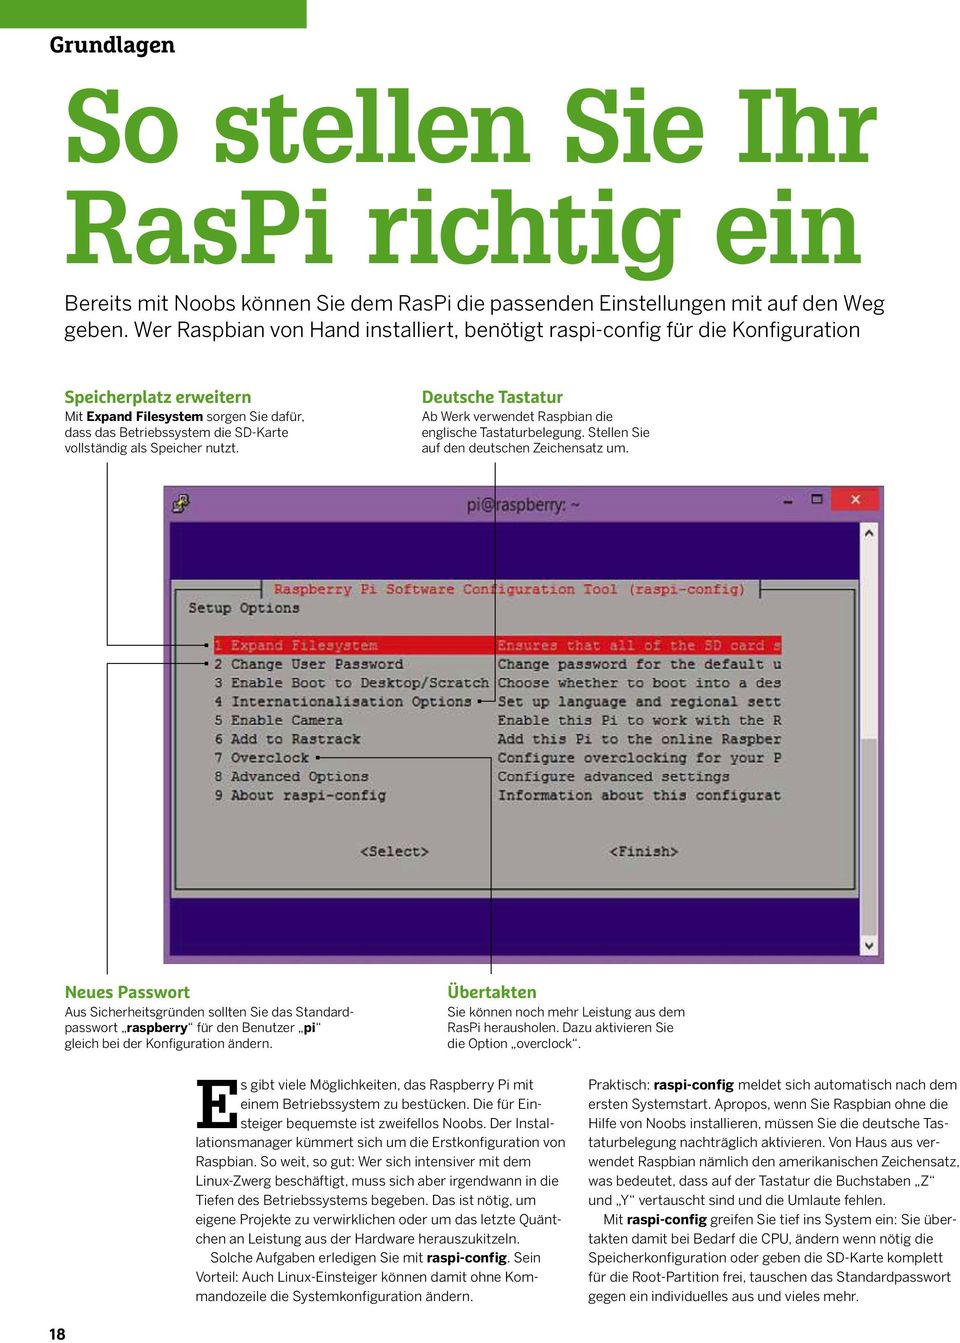 Speicher nutzt. Deutsche Tastatur Ab Werk verwendet Raspbian die englische Tastaturbelegung. Stellen Sie auf den deutschen Zeichensatz um.